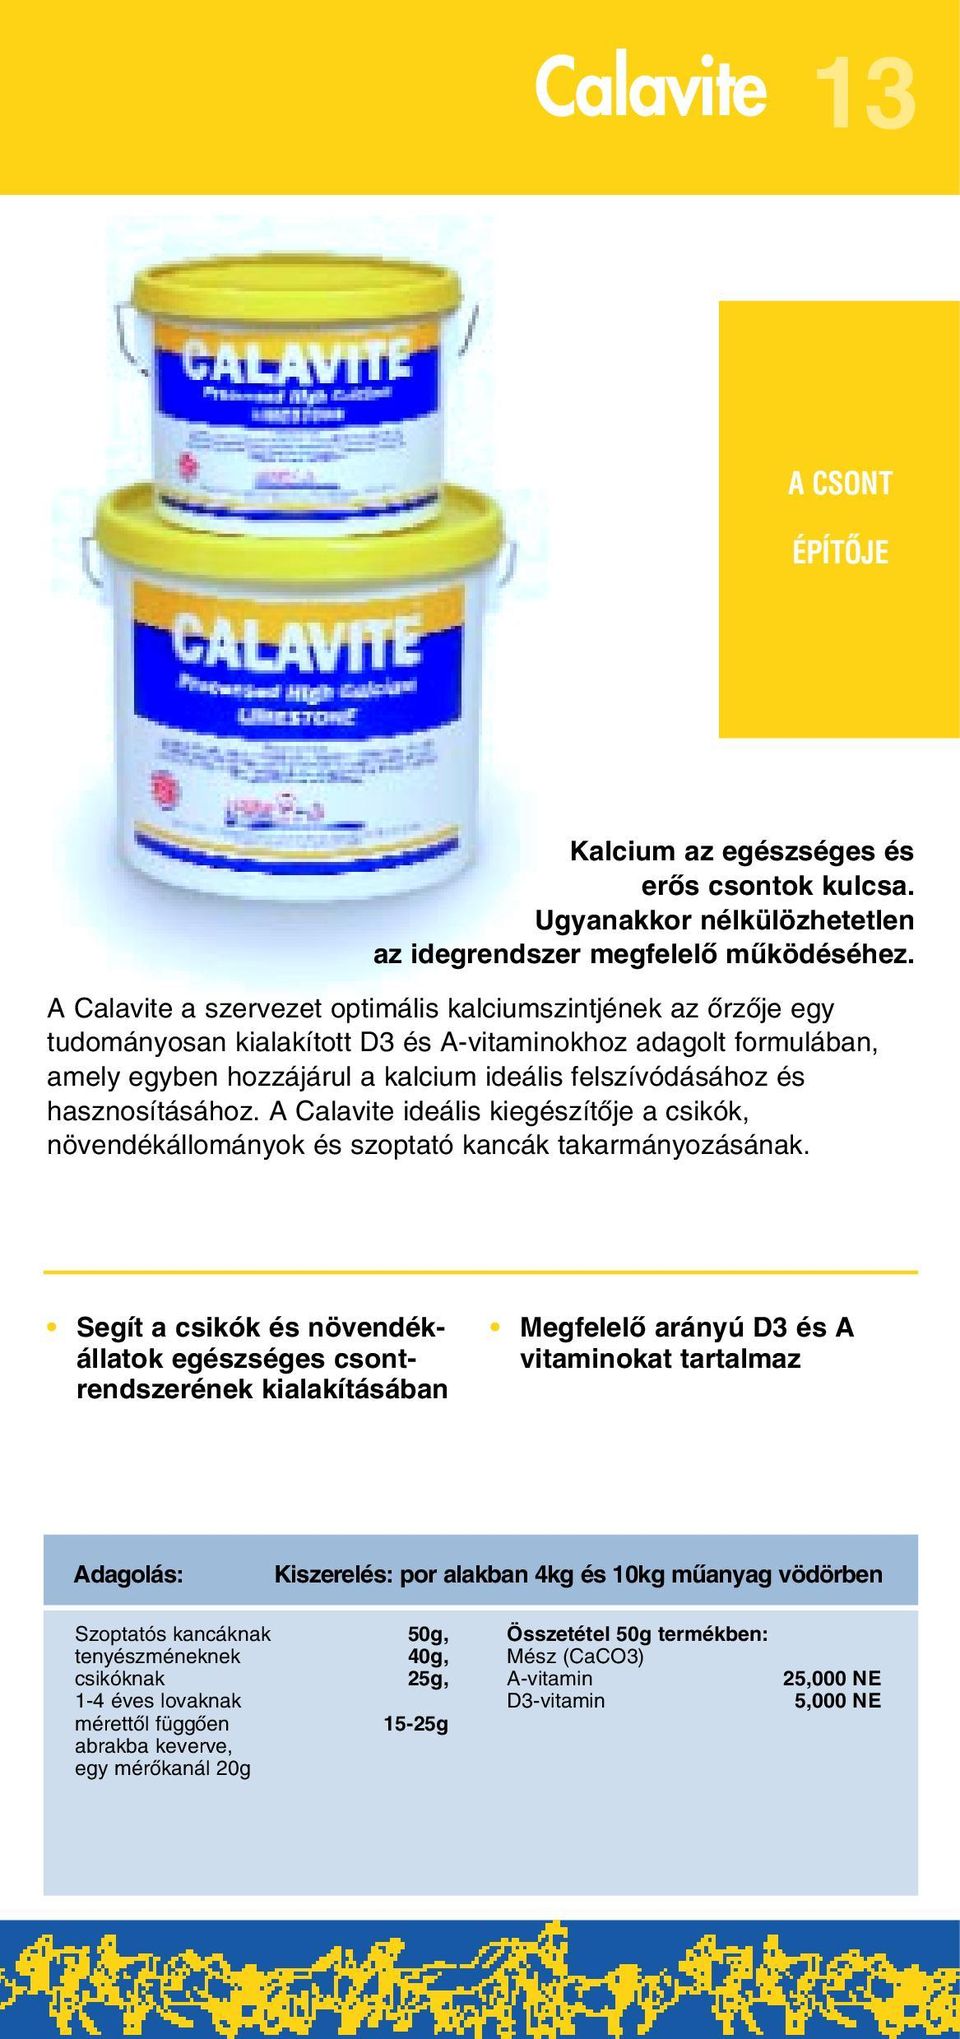 hasznosításához. A Calavite ideális kiegészítôje a csikók, növendékállományok és szoptató kancák takarmányozásának.